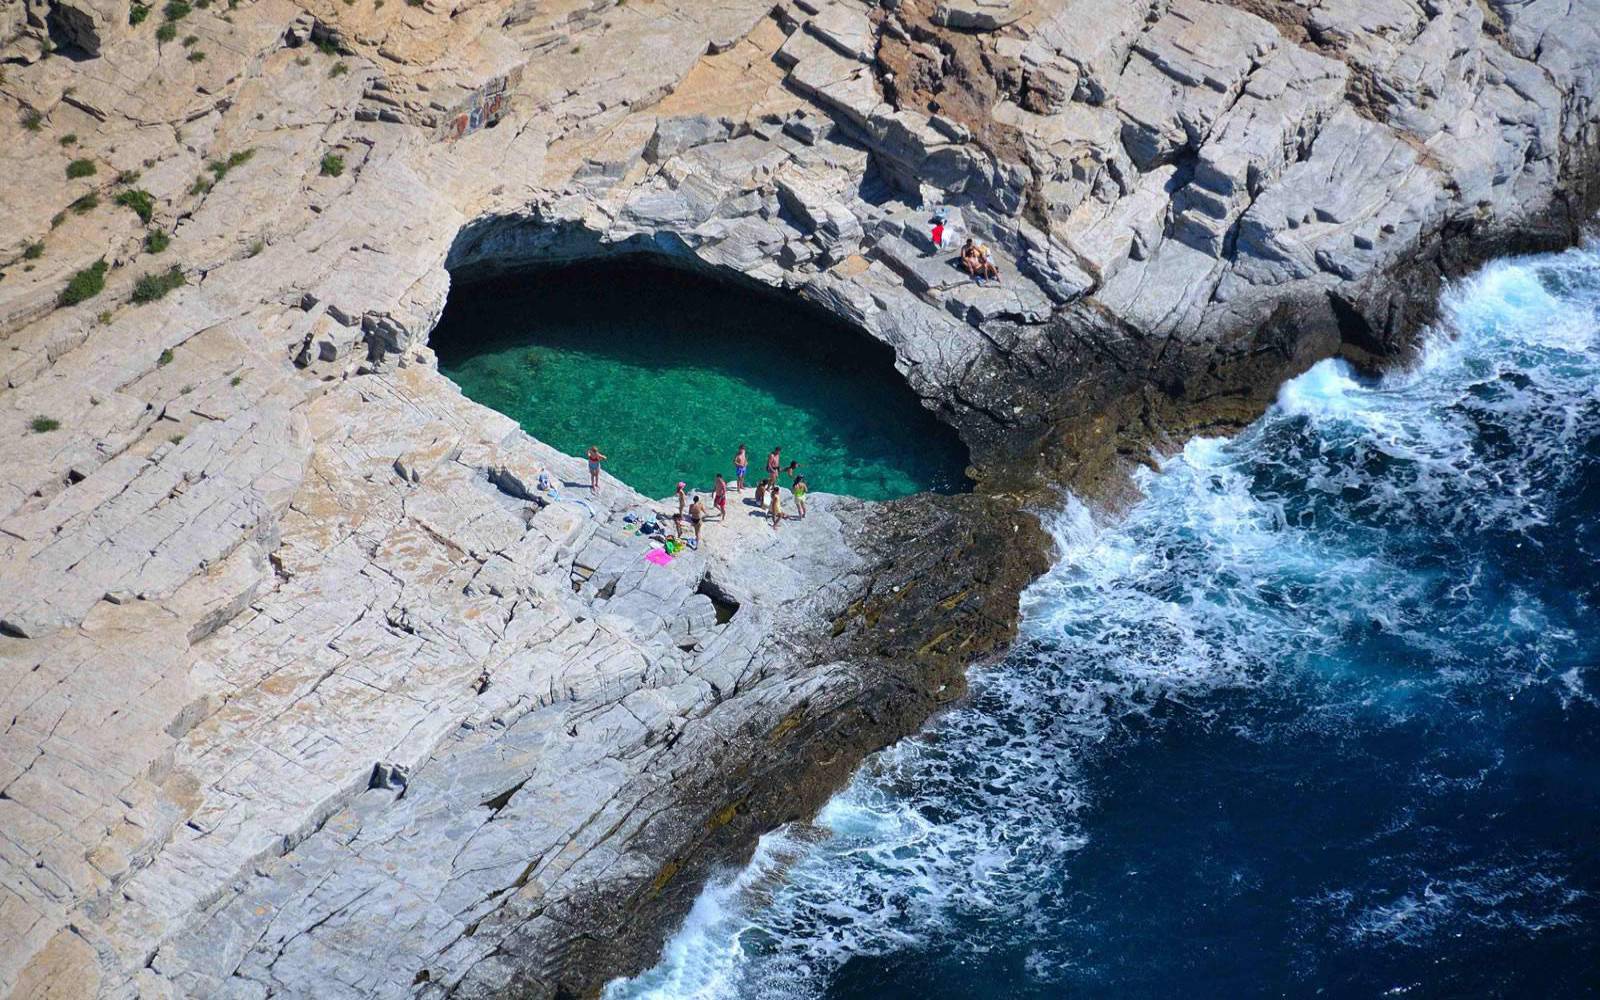 Giola Lagoon (Hy Lạp) Hồ bơi tự nhiên Giola nằm trên hòn đảo Thassos, Hy Lạp theo truyền thuyết là nơi thần Zeus tạo ra cho vợ là nữ thần tình yêu Aphrodite tắm. Diện tích hồ Giola khá khiêm tốn, chỉ dài 20m, rộng 15m, được bao bọc bởi các bậc thang đá cao tám mét khiến hồ hệt như chiếc bồn tắm nằm giữa biển khơi. 